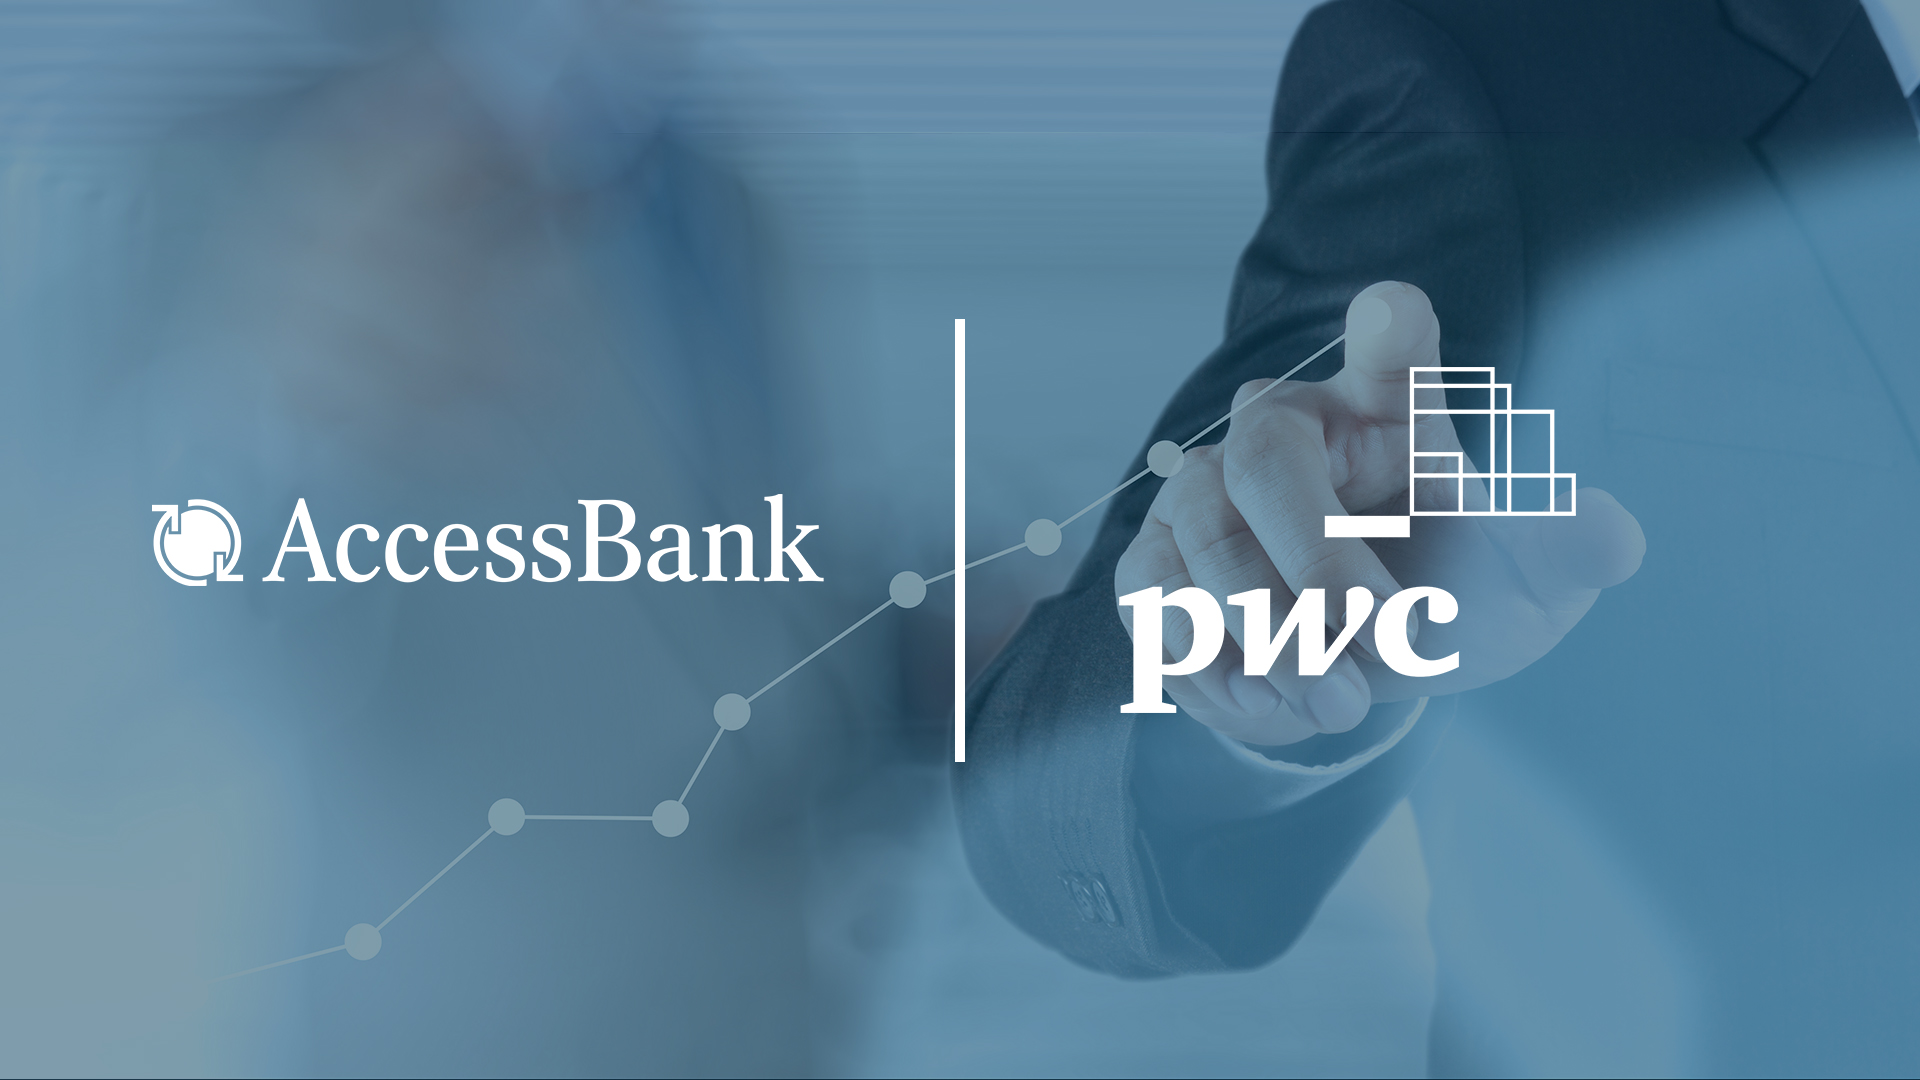 AccessBank опубликовал финансовый отчет за 2019 год, заверенный аудиторской компанией PricewaterhouseCoopers